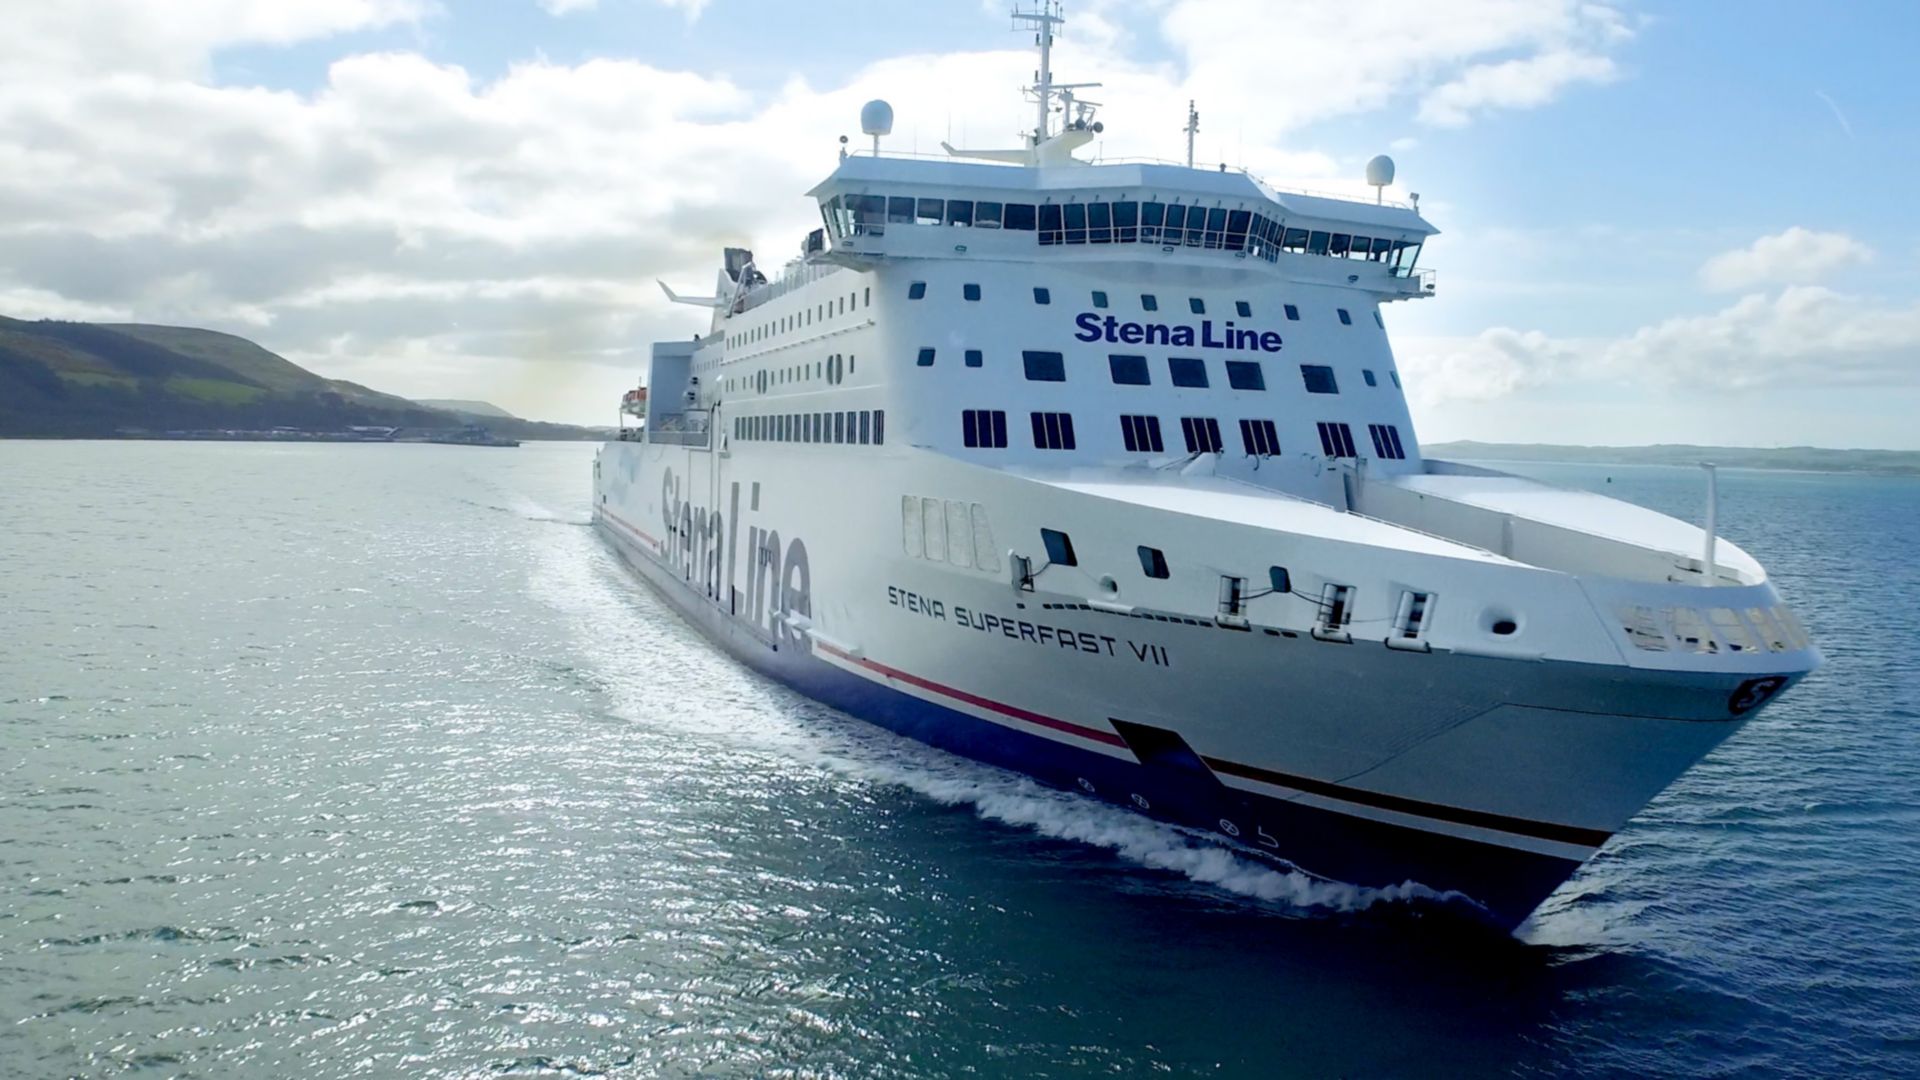 Stena Superfast VII ferry en mer